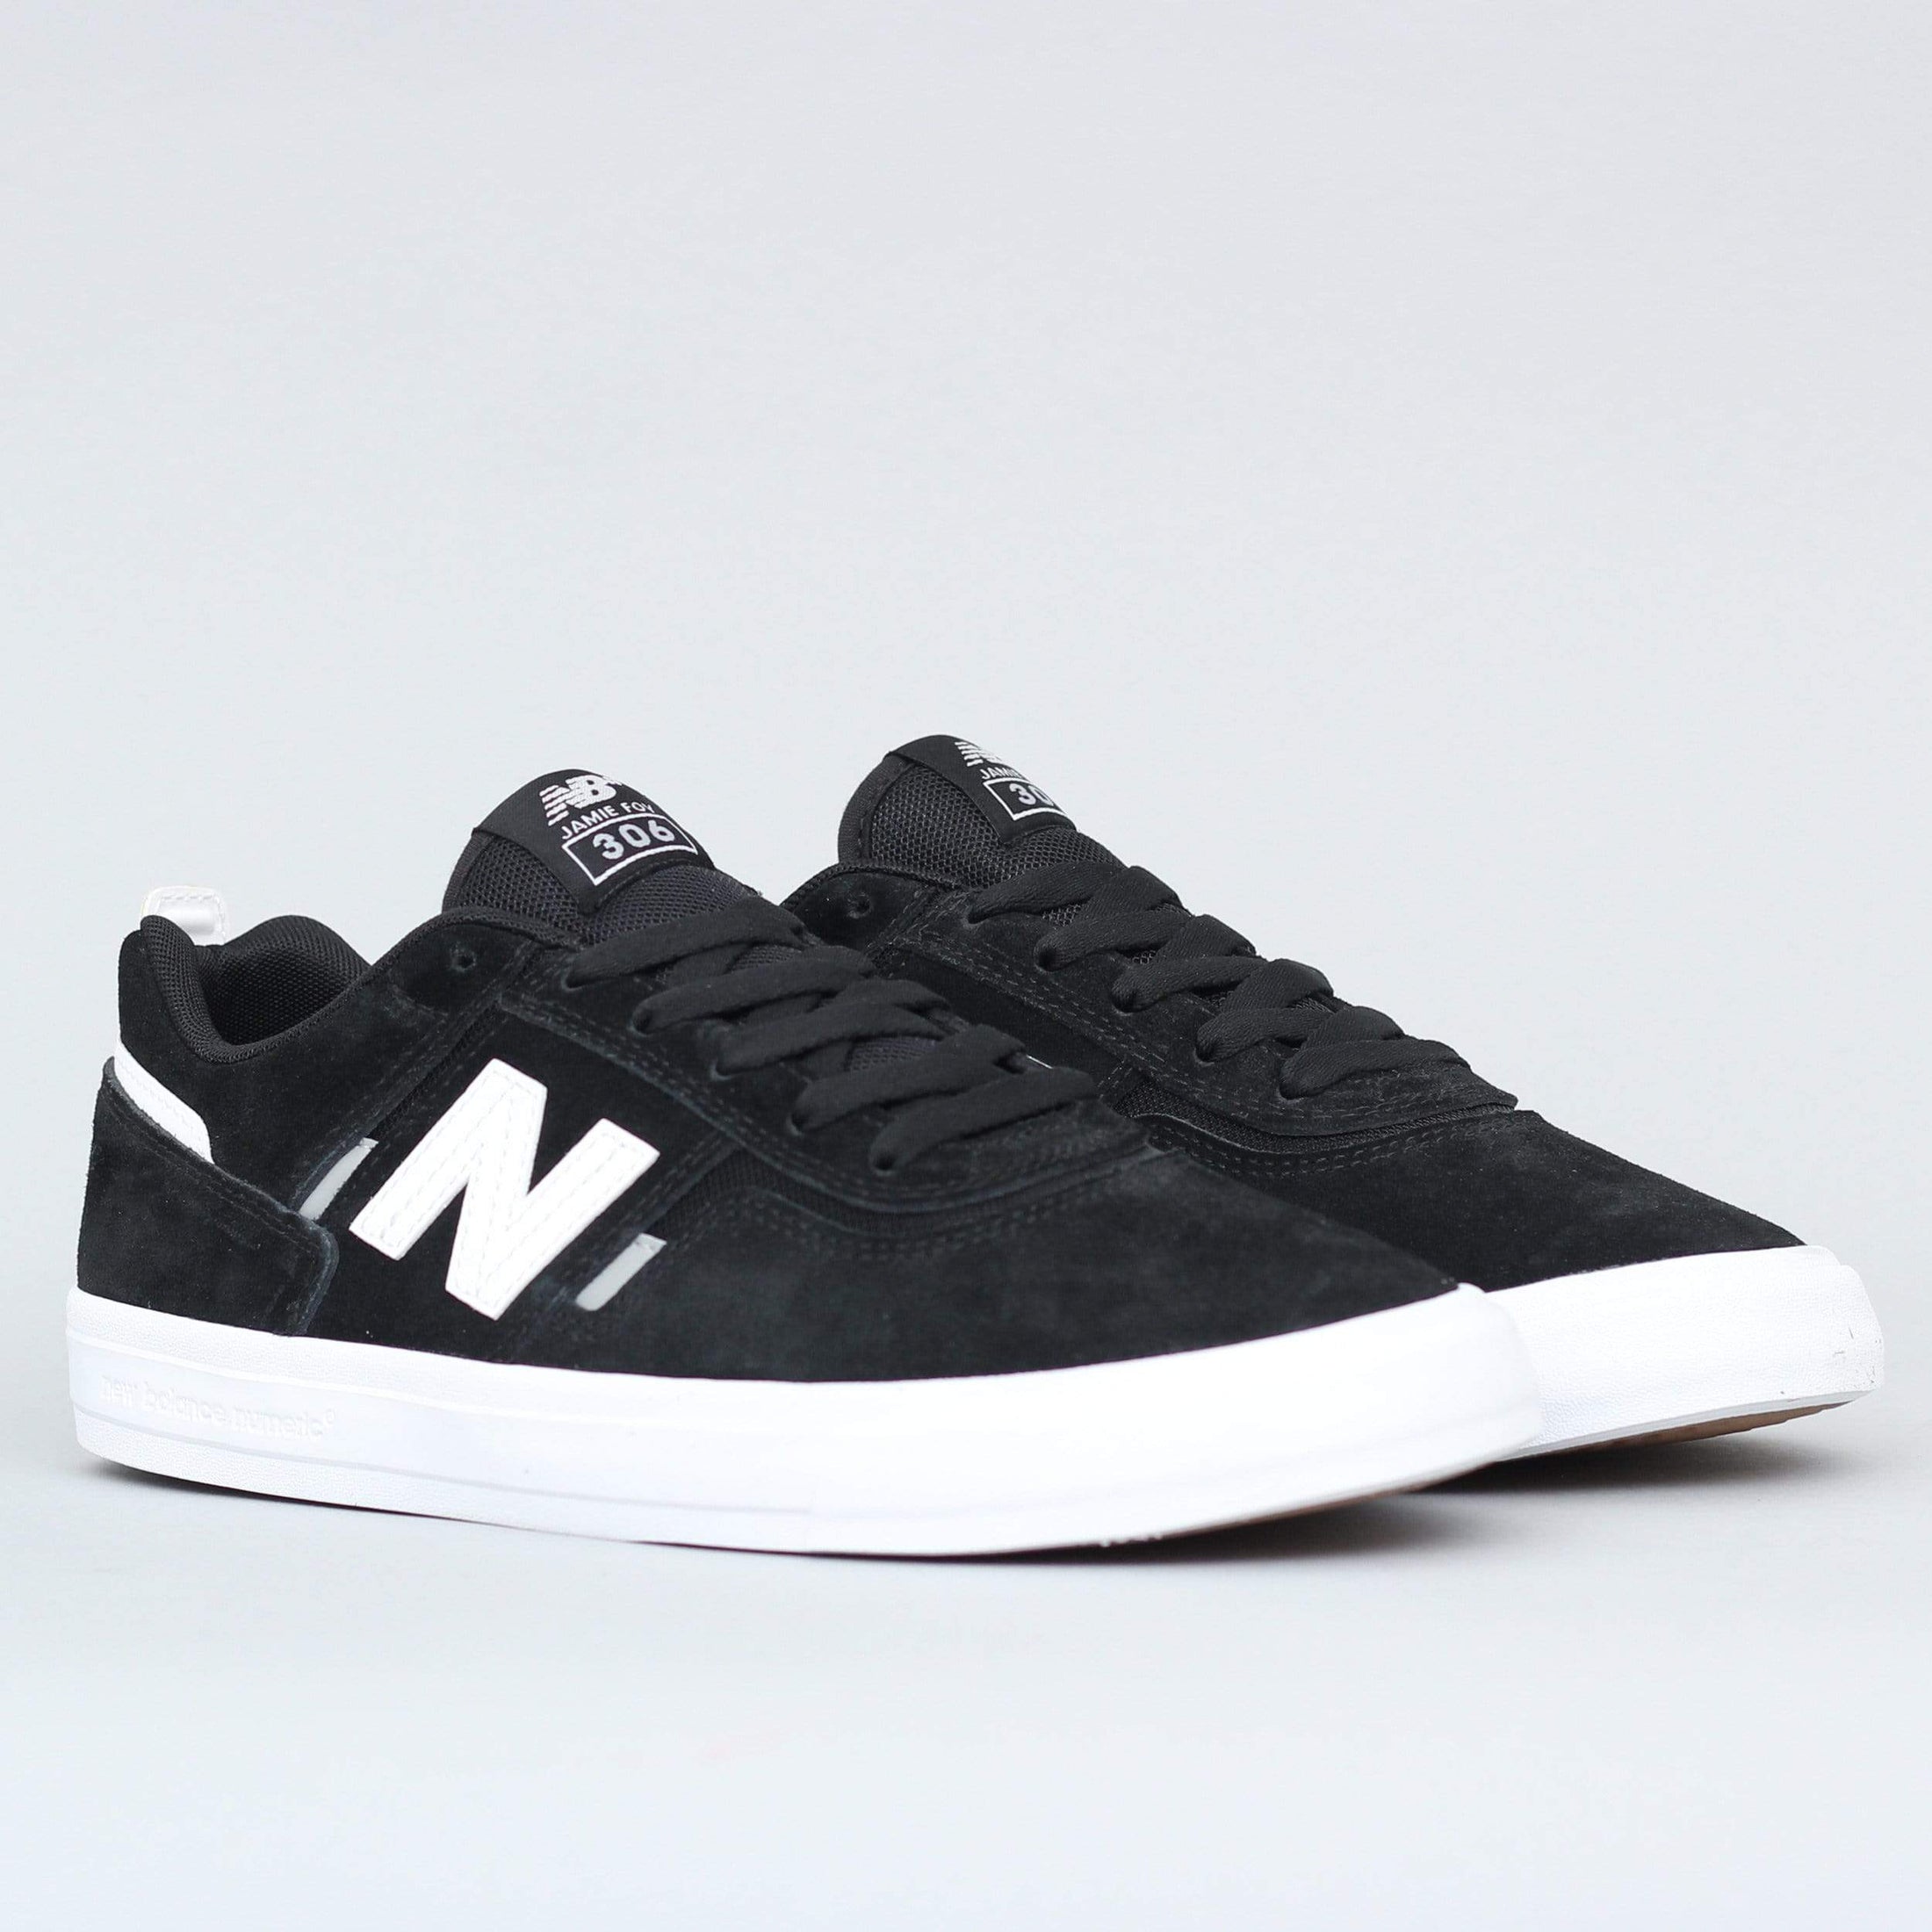 New Balance Numeric 306 Shoes Black / White